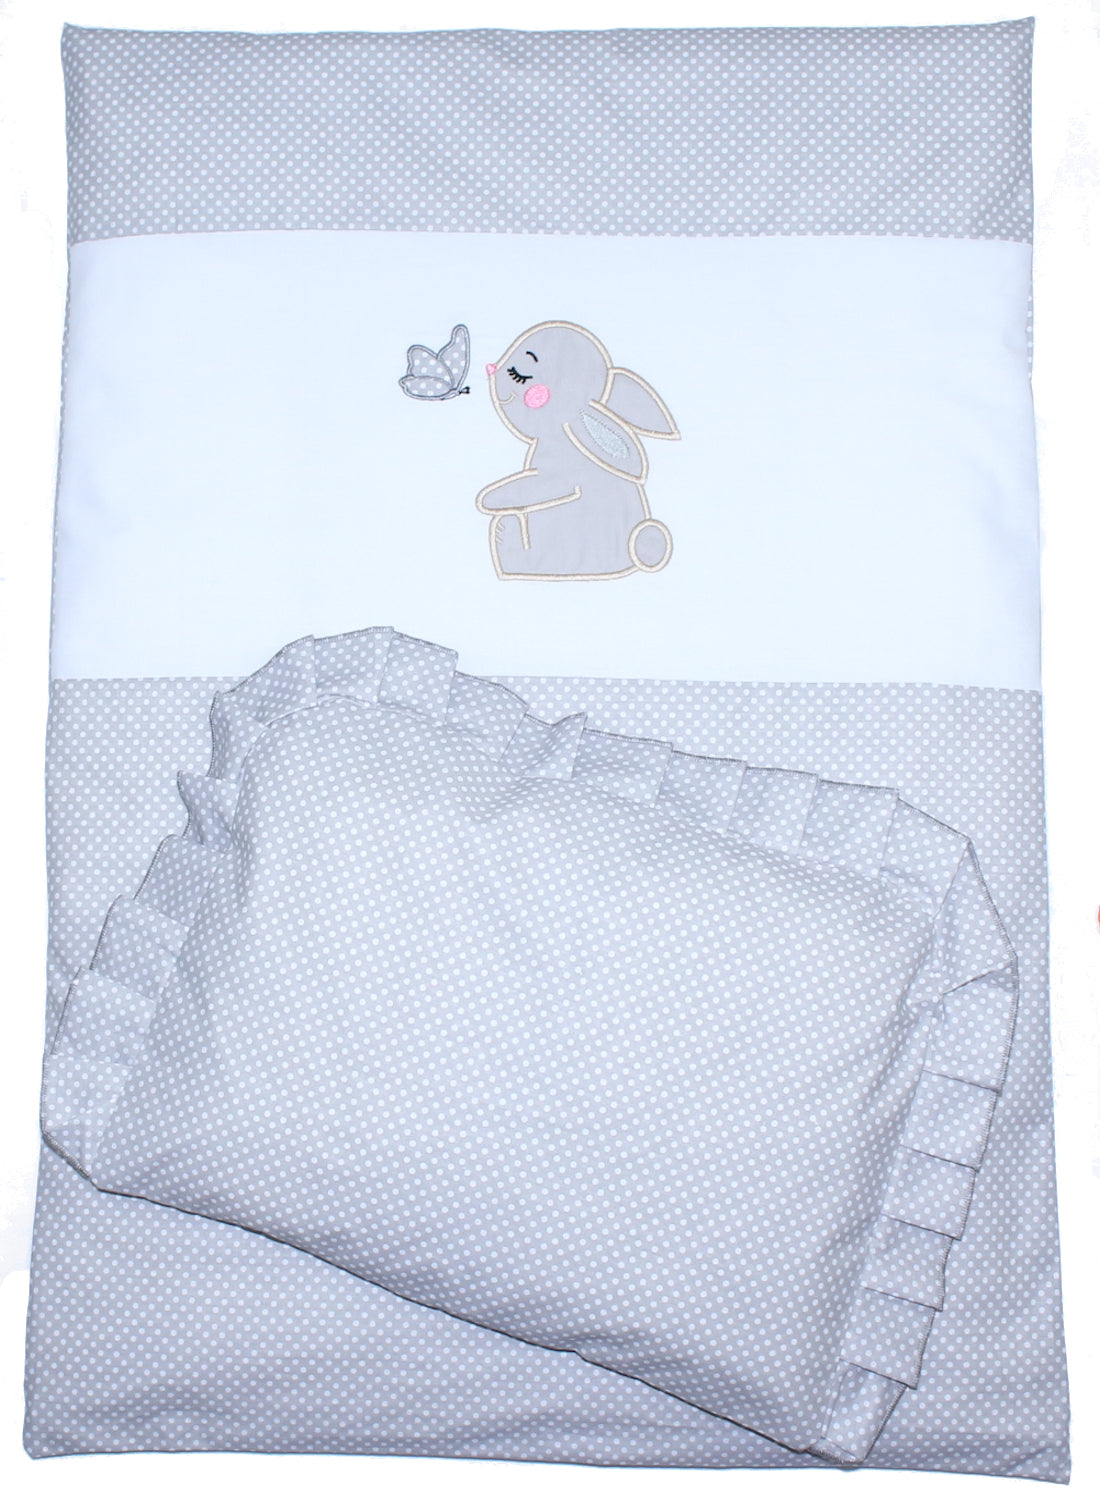 2- 4tlg Kinderwagenset - Hase- Punkten Grau - Bettwäsche für Kinderwagen Bezüge Decke Kissen